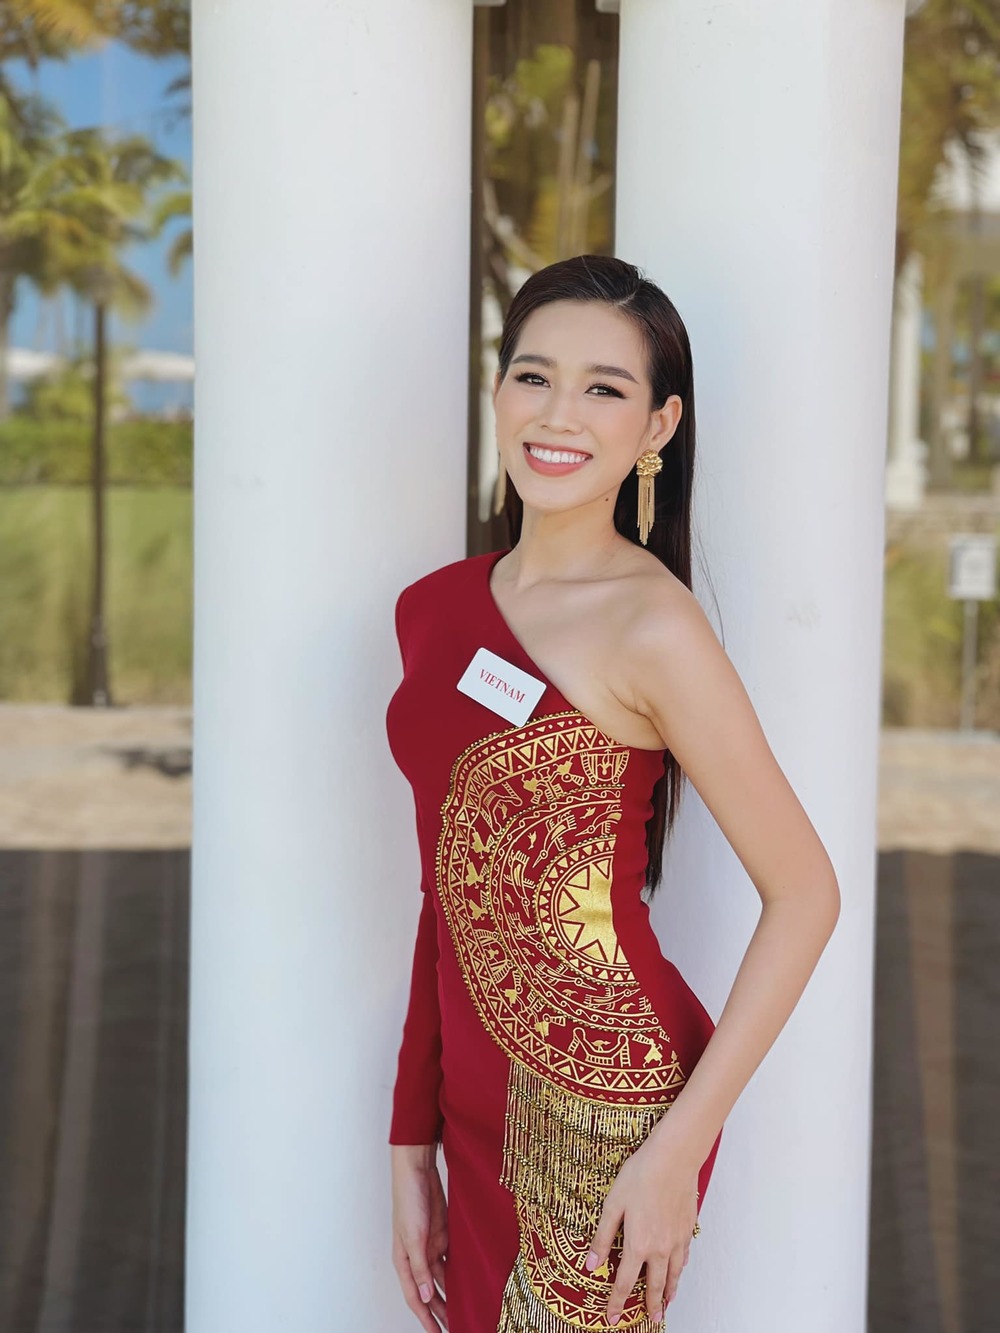  
Hoa hậu Đỗ Thị Hà rạng rỡ trong sắc đỏ tại phần thi Head To Head Challenges. (Ảnh: FBNV) - Tin sao Viet - Tin tuc sao Viet - Scandal sao Viet - Tin tuc cua Sao - Tin cua Sao